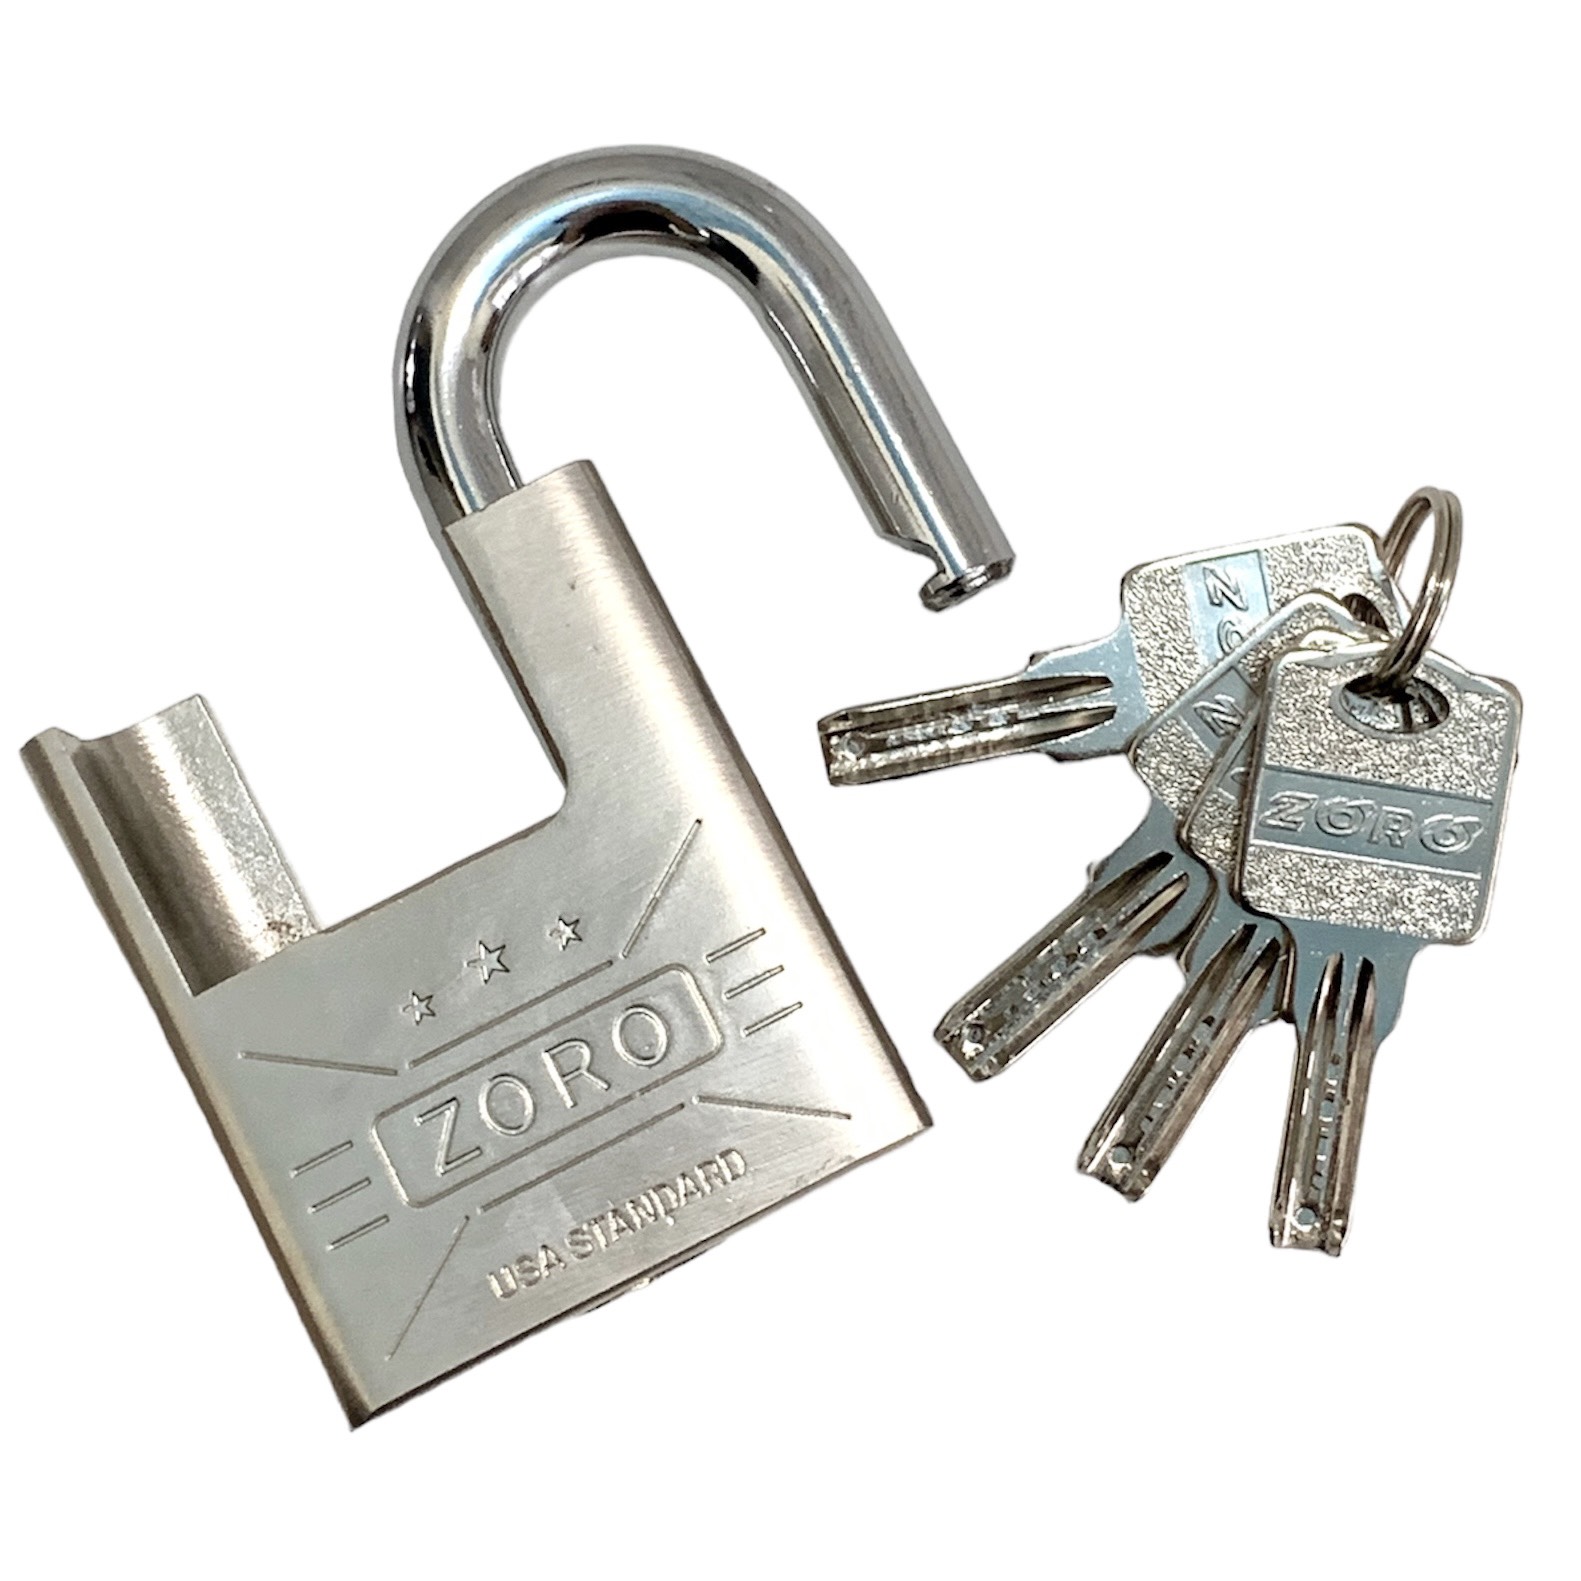 Ổ khóa ZORO 6 phân chống cắt,chìa muỗng - ổ khóa chống cắt, ổ khóa công nghệ mỹ, khóa bấm không cần dùng chìa